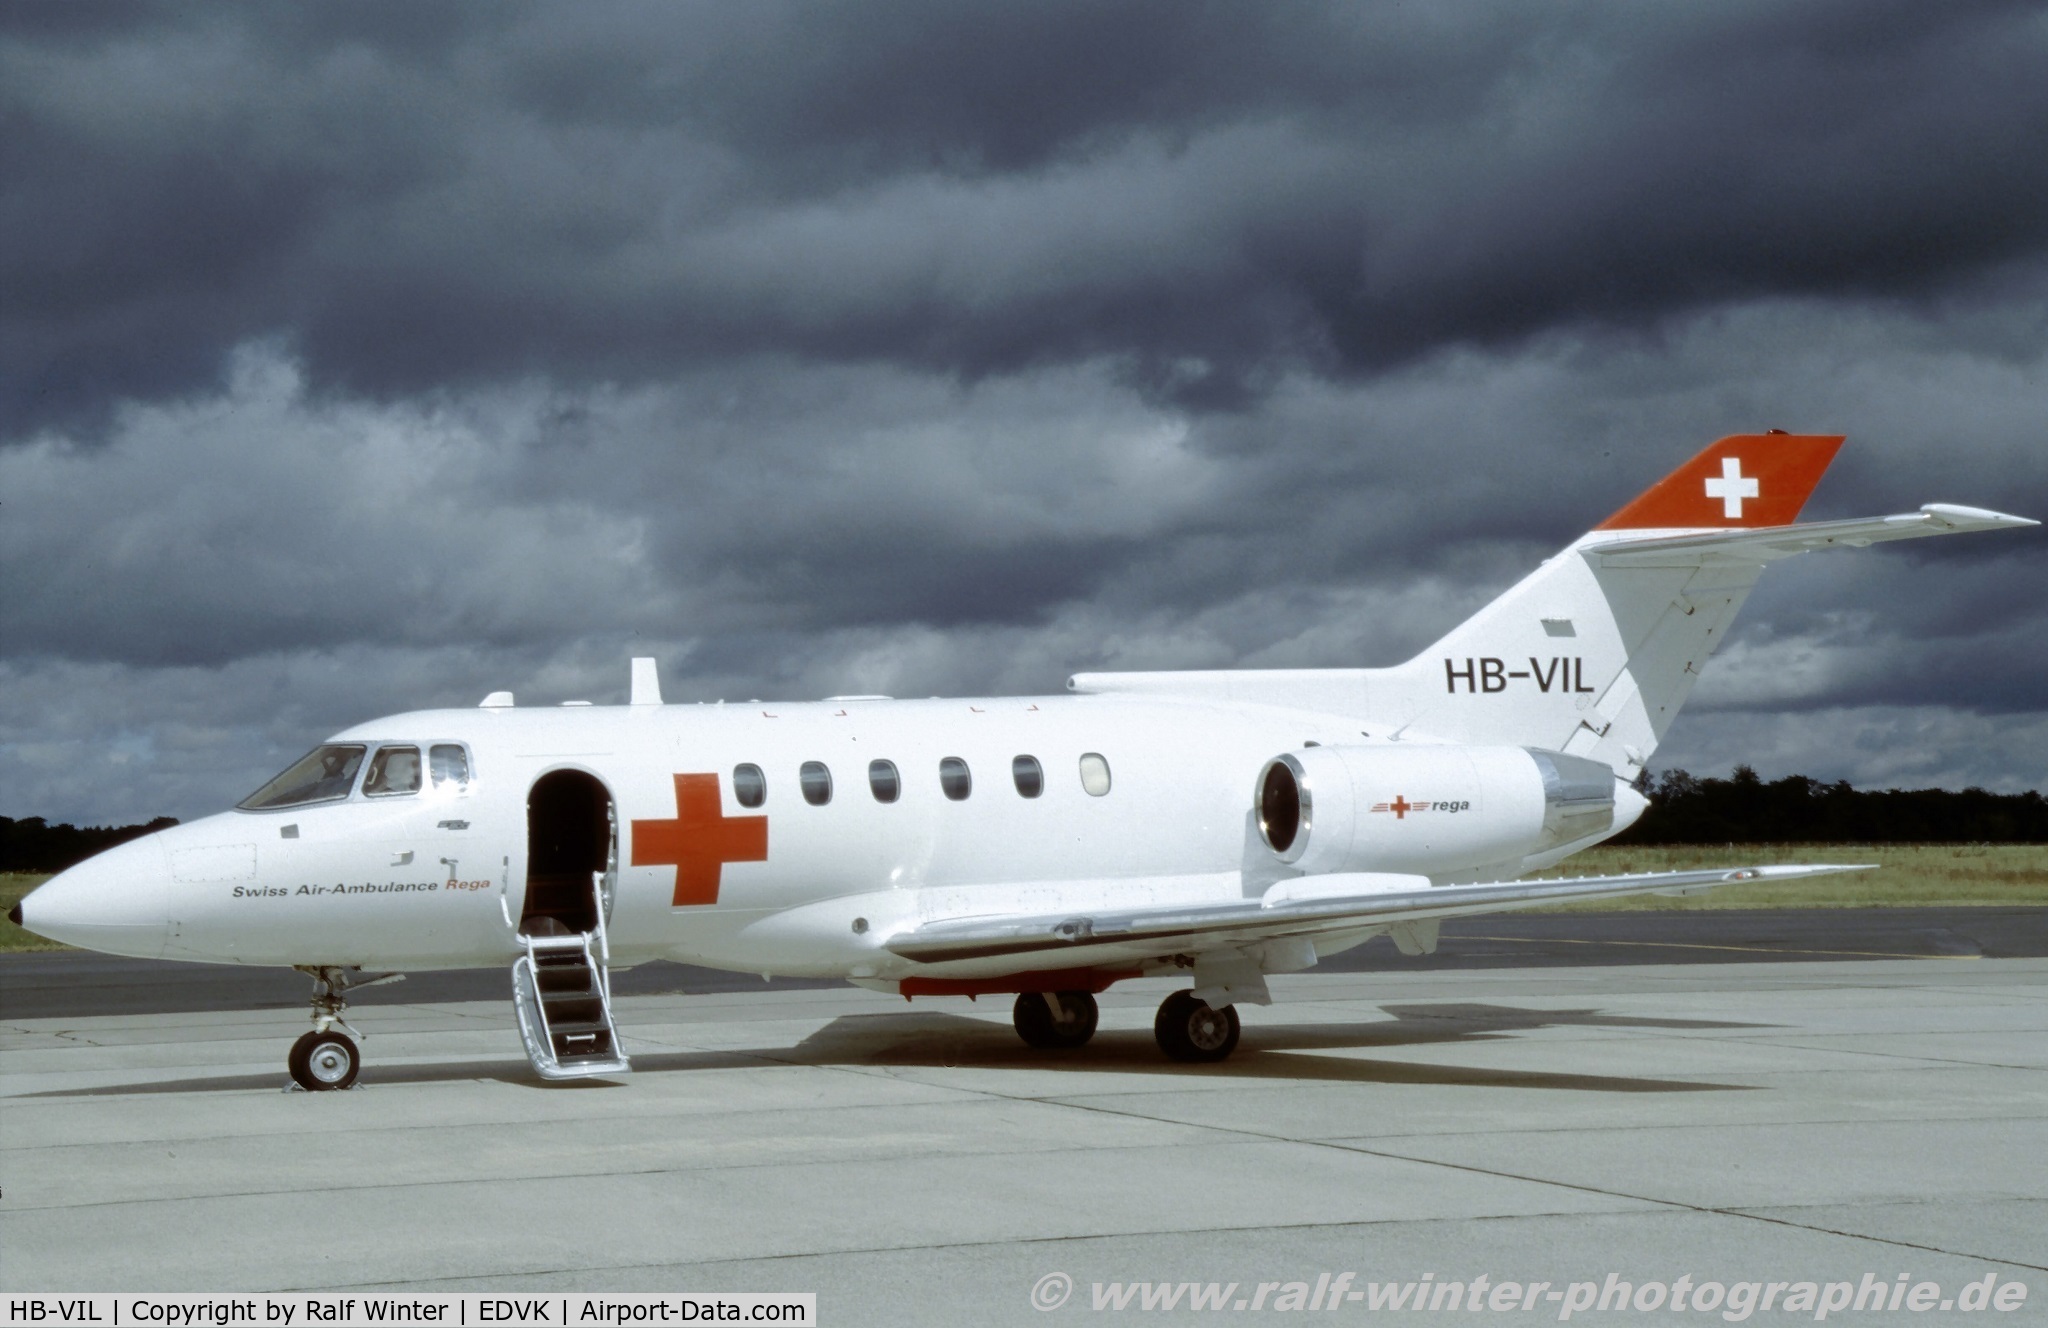 HB-VIL, 2003 British Aerospace BAe.125-800B C/N 258097, British Aerospace BAe 125-800B - SAZ REGA Swiss Air Ambulance - 258097 - HB-VIL - 1994 - EDVK